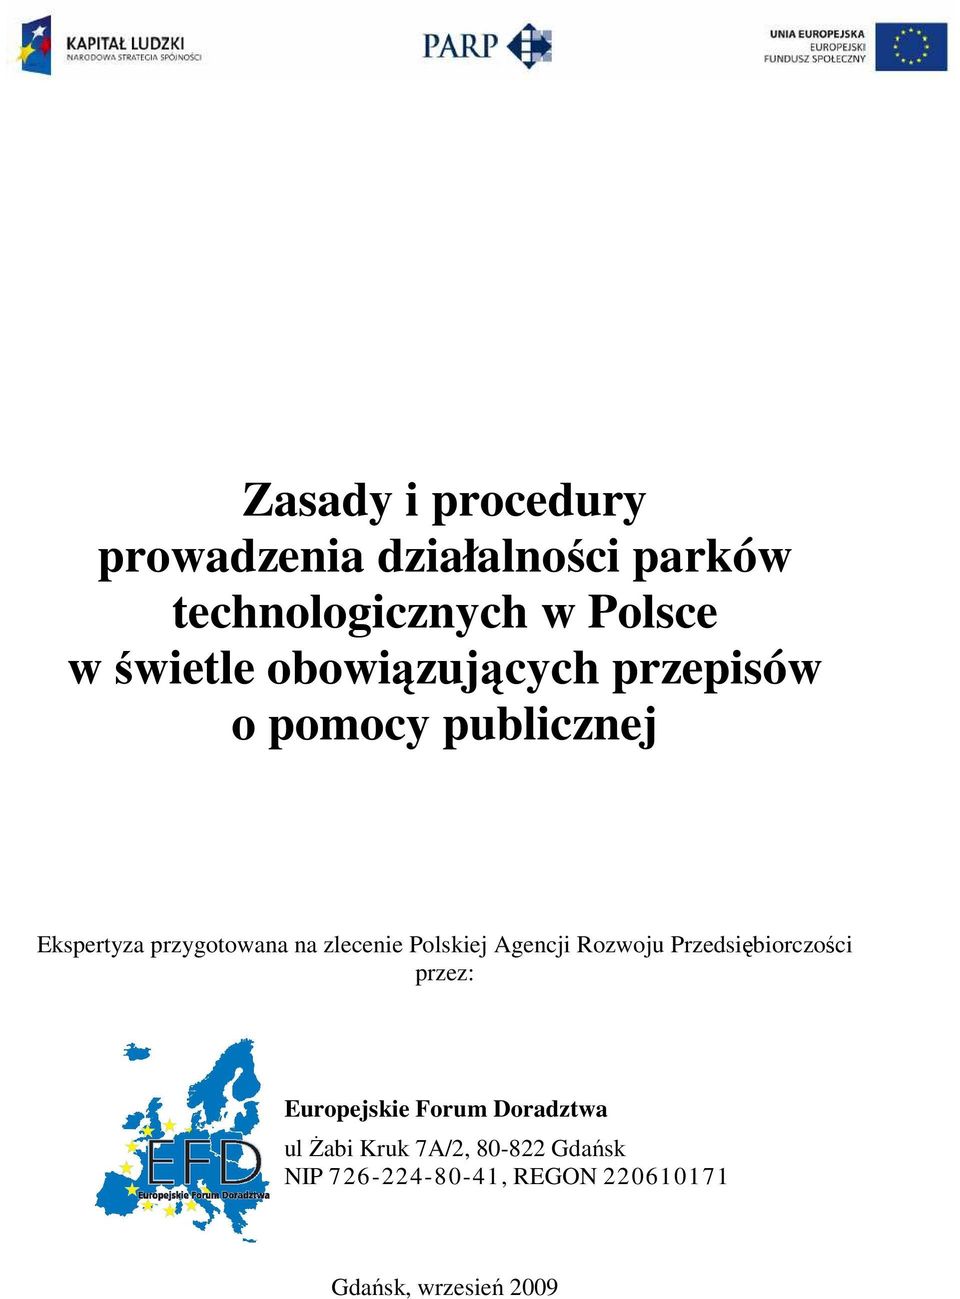 zlecenie Polskiej Agencji Rozwoju Przedsiębiorczości przez: Europejskie Forum